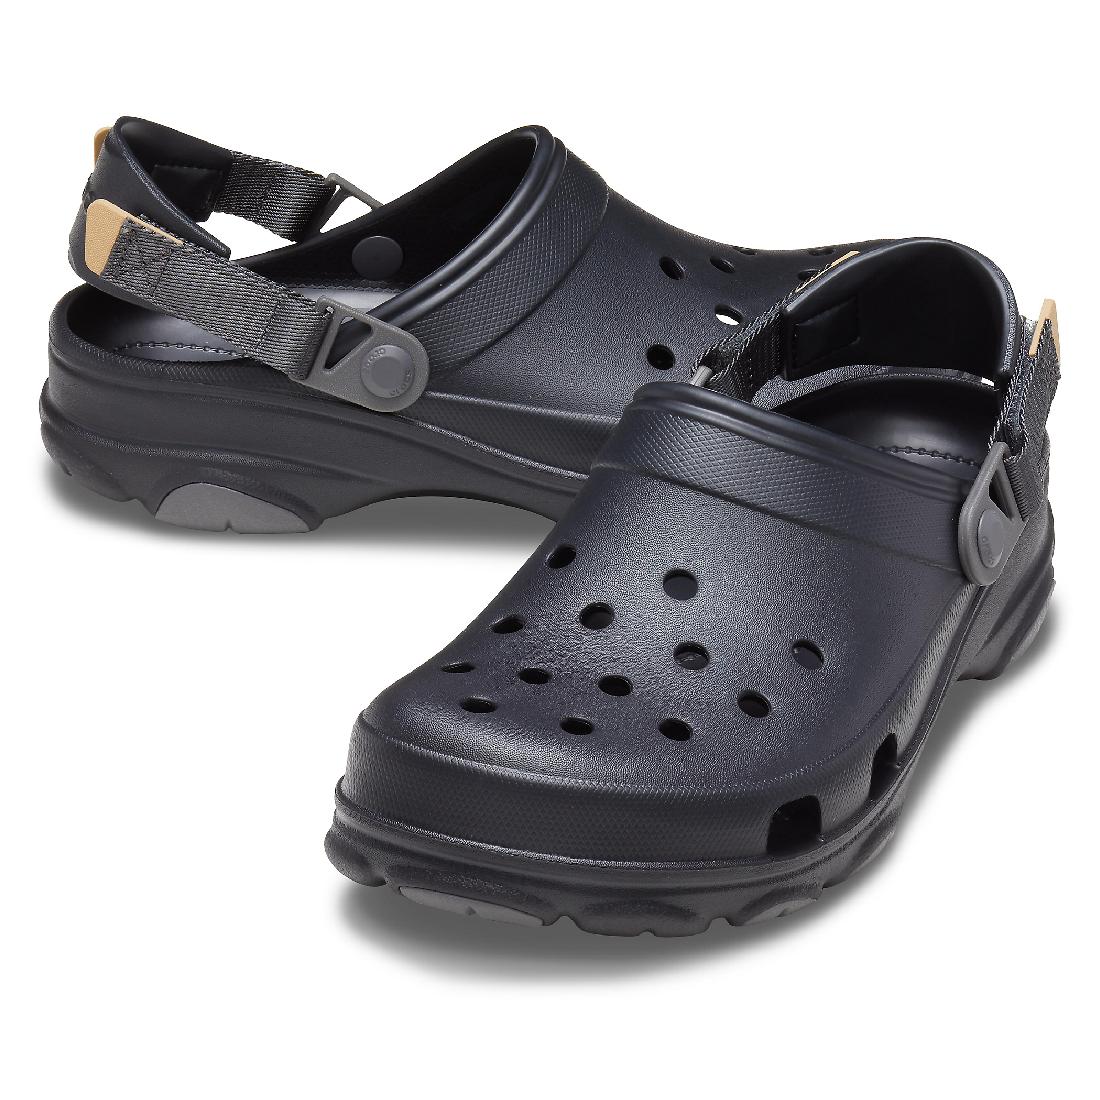 crocs Schuhe - Clogs Classic All Terrain Clog - Black, Größe:39/40 EU